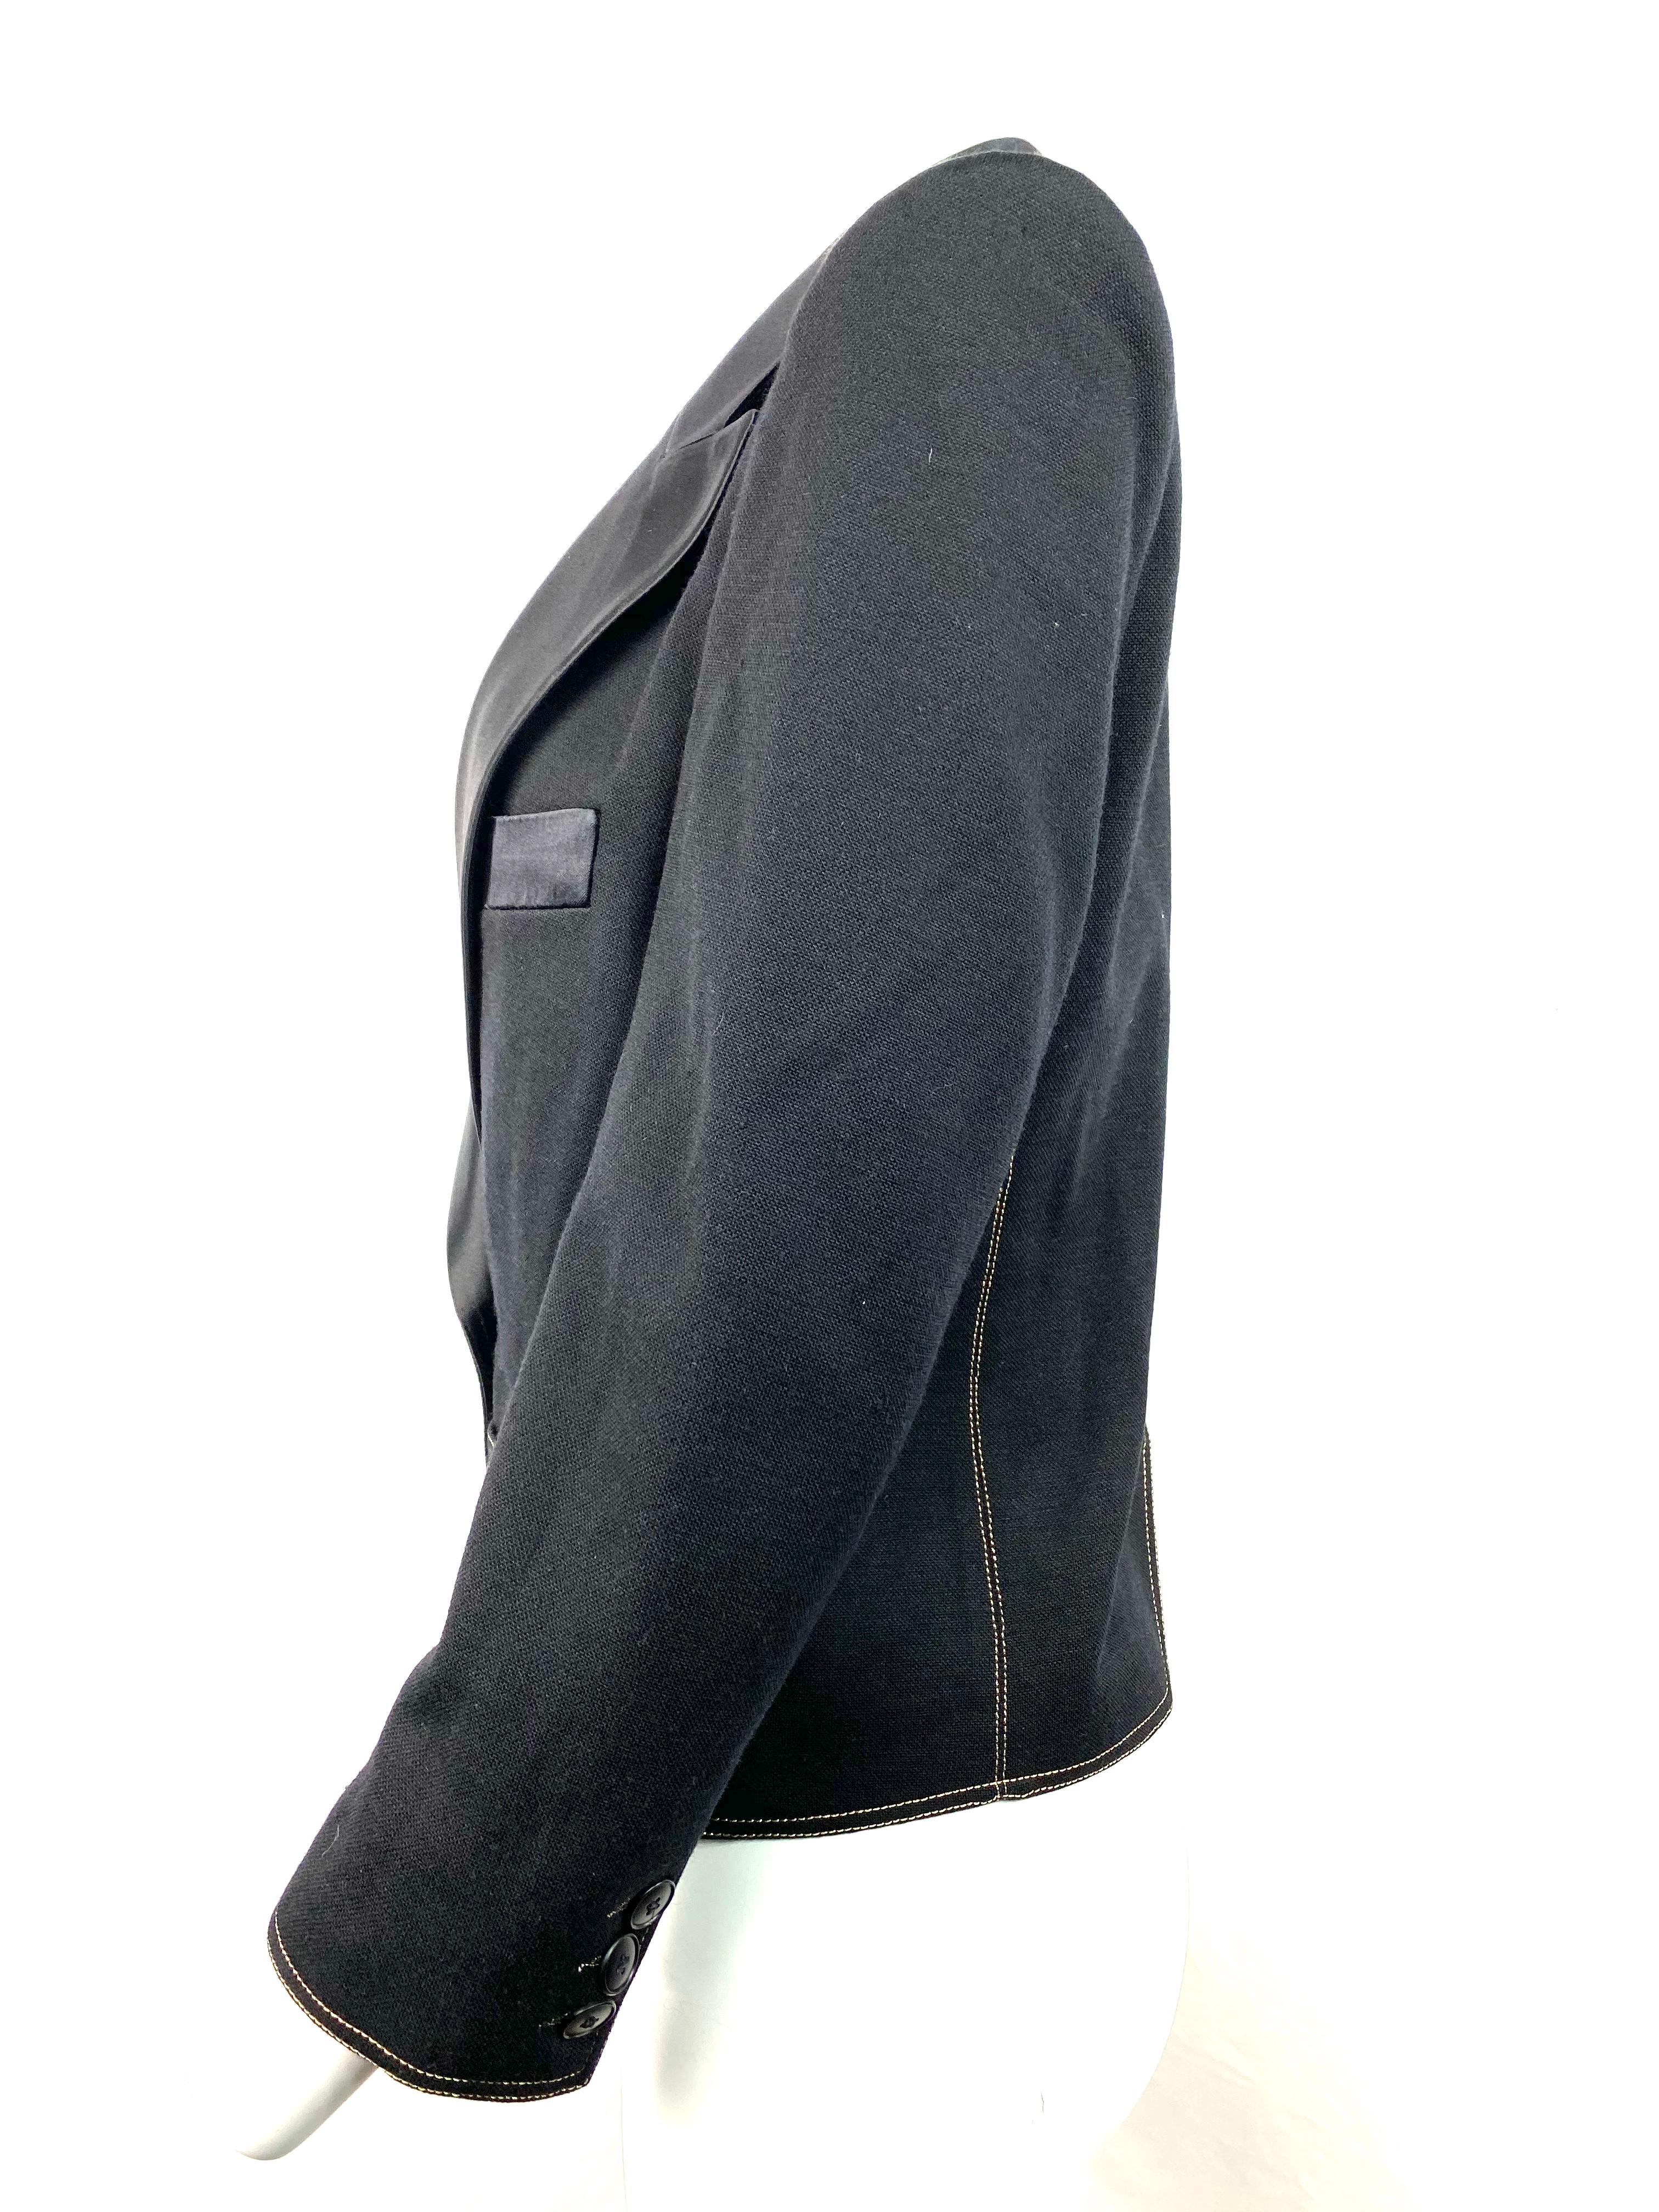 Women's or Men's Sonia Rykiel Black Wool Blazer Jacket Size 38 For Sale